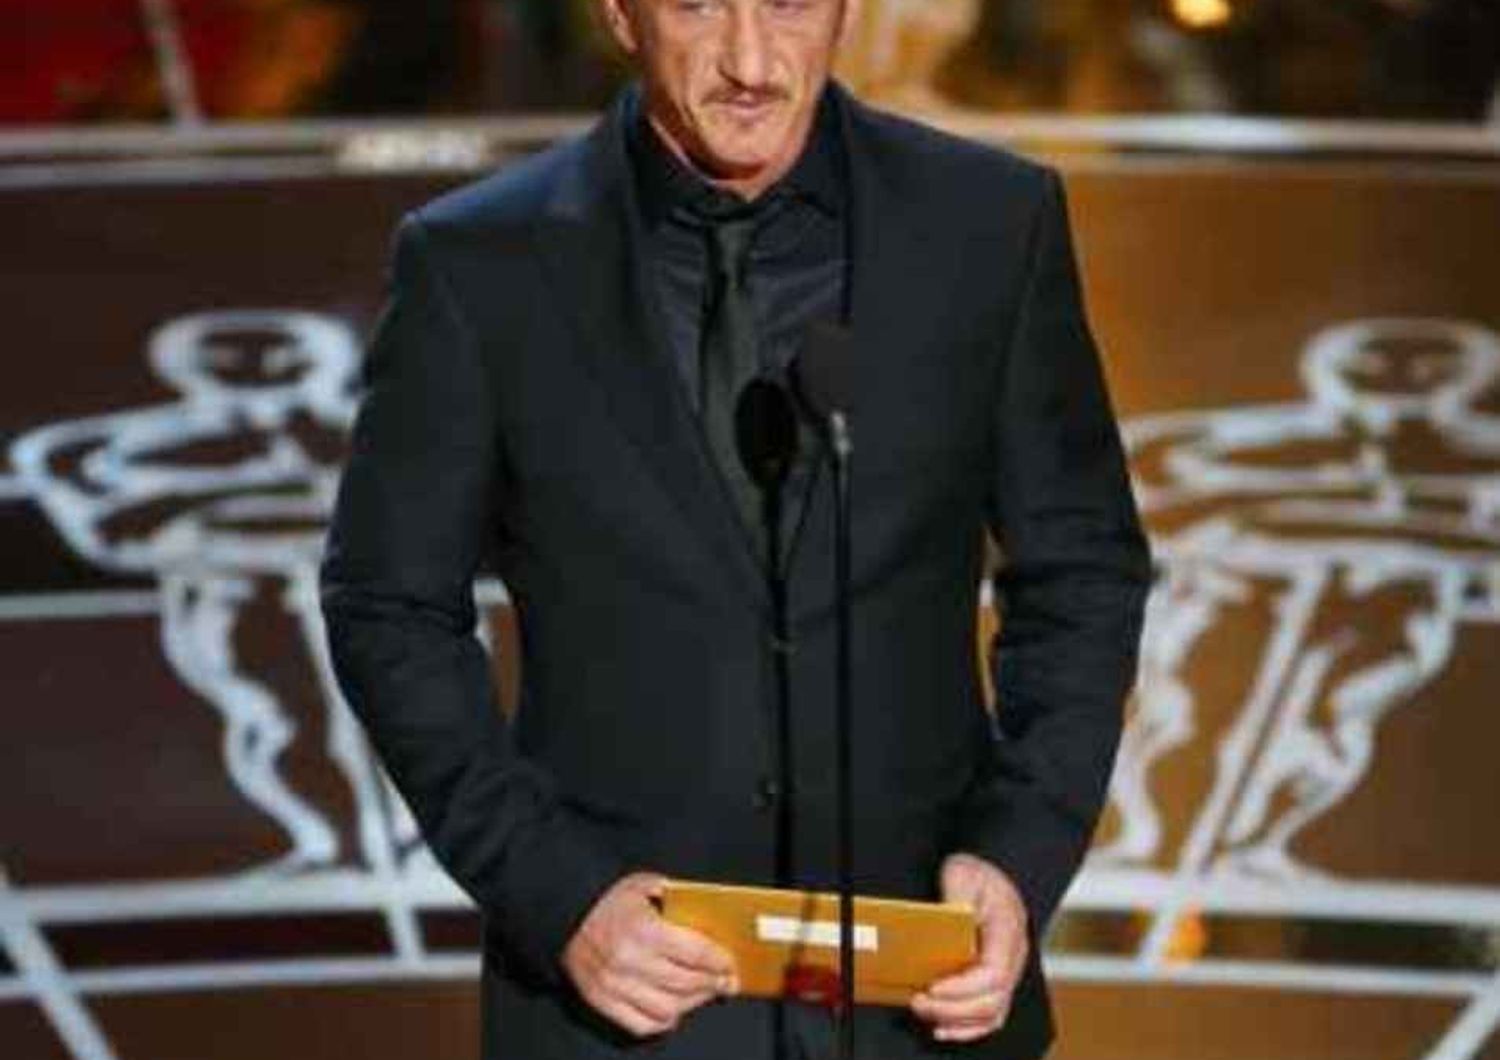 Sean Penn non chiede scusa per la battutaccia agli Oscar, "era ironica"